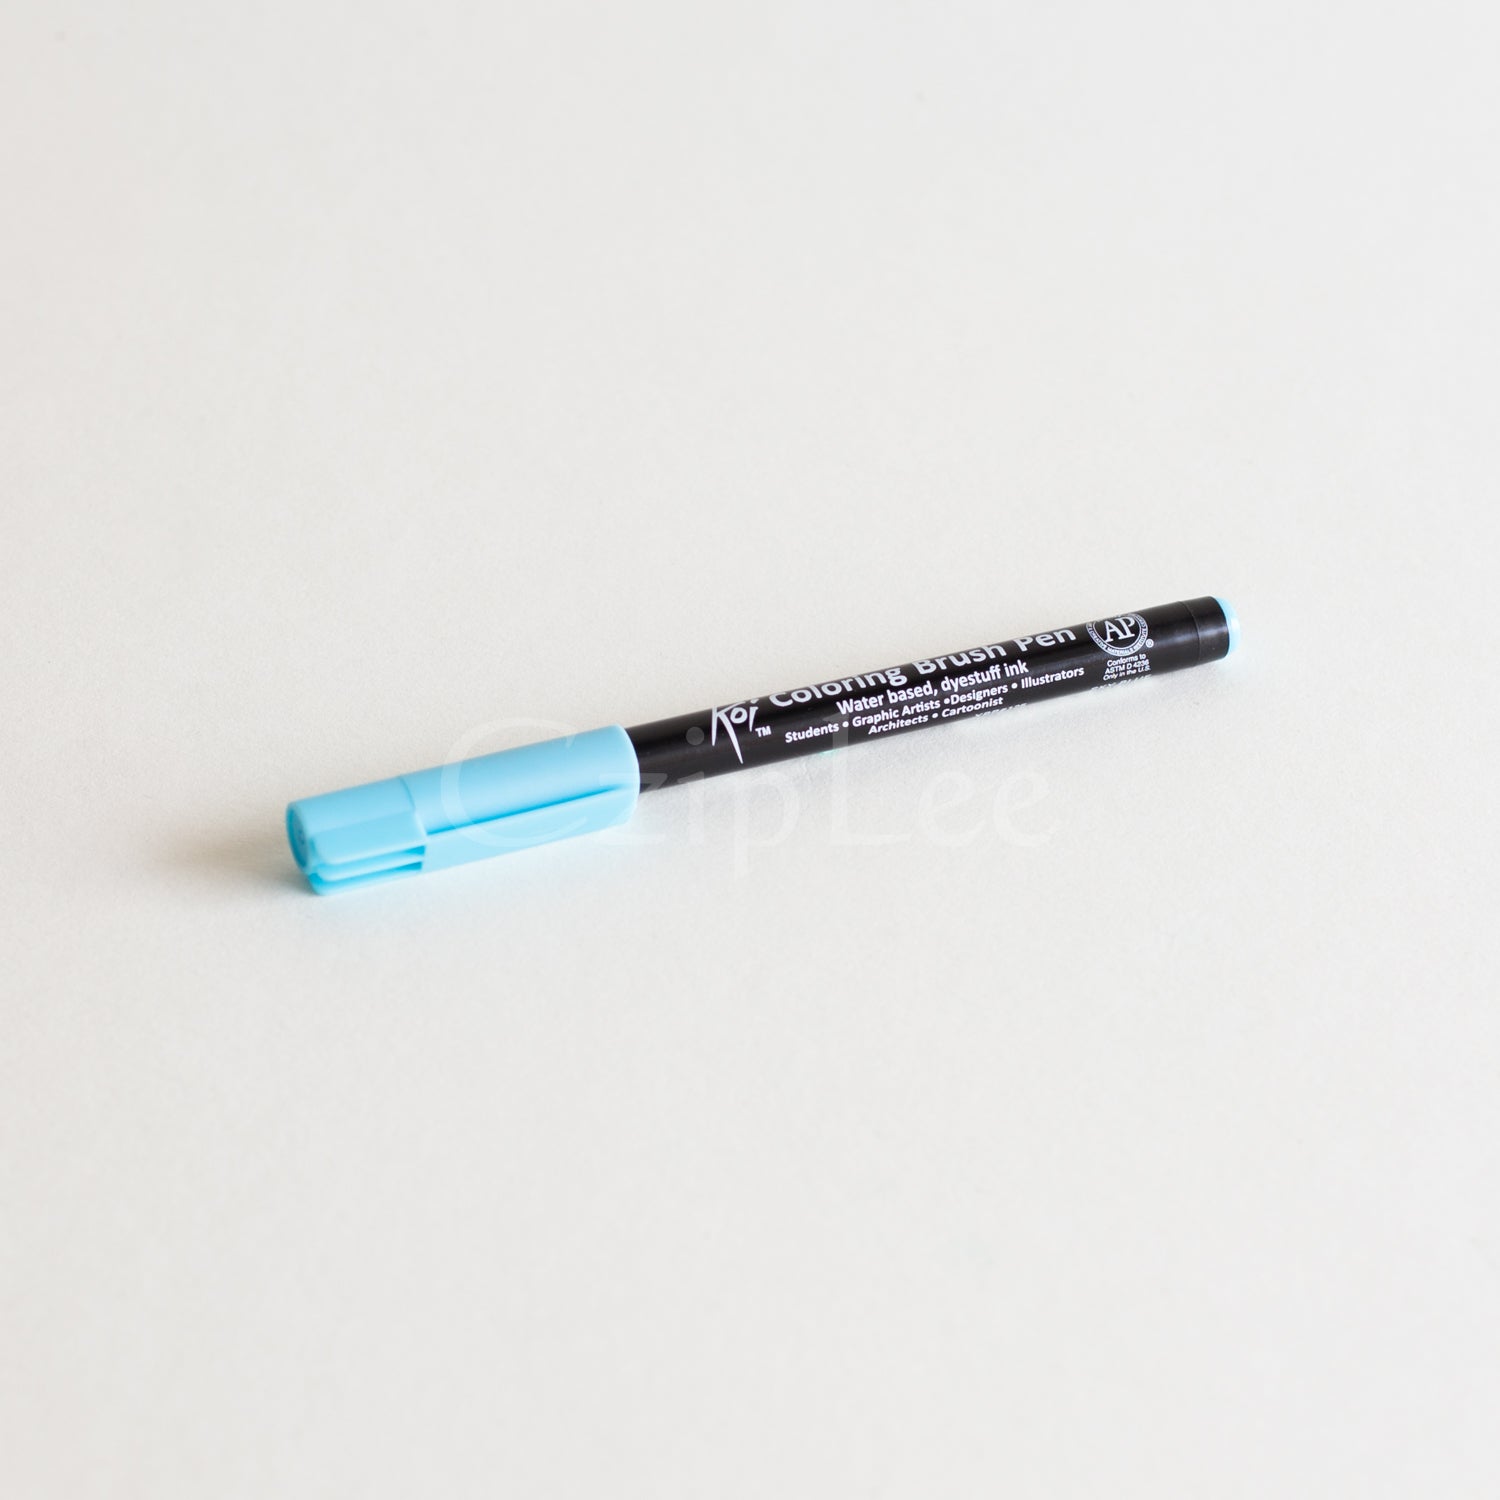 SAKURA Koi Brush Pen #125 Sky Blue